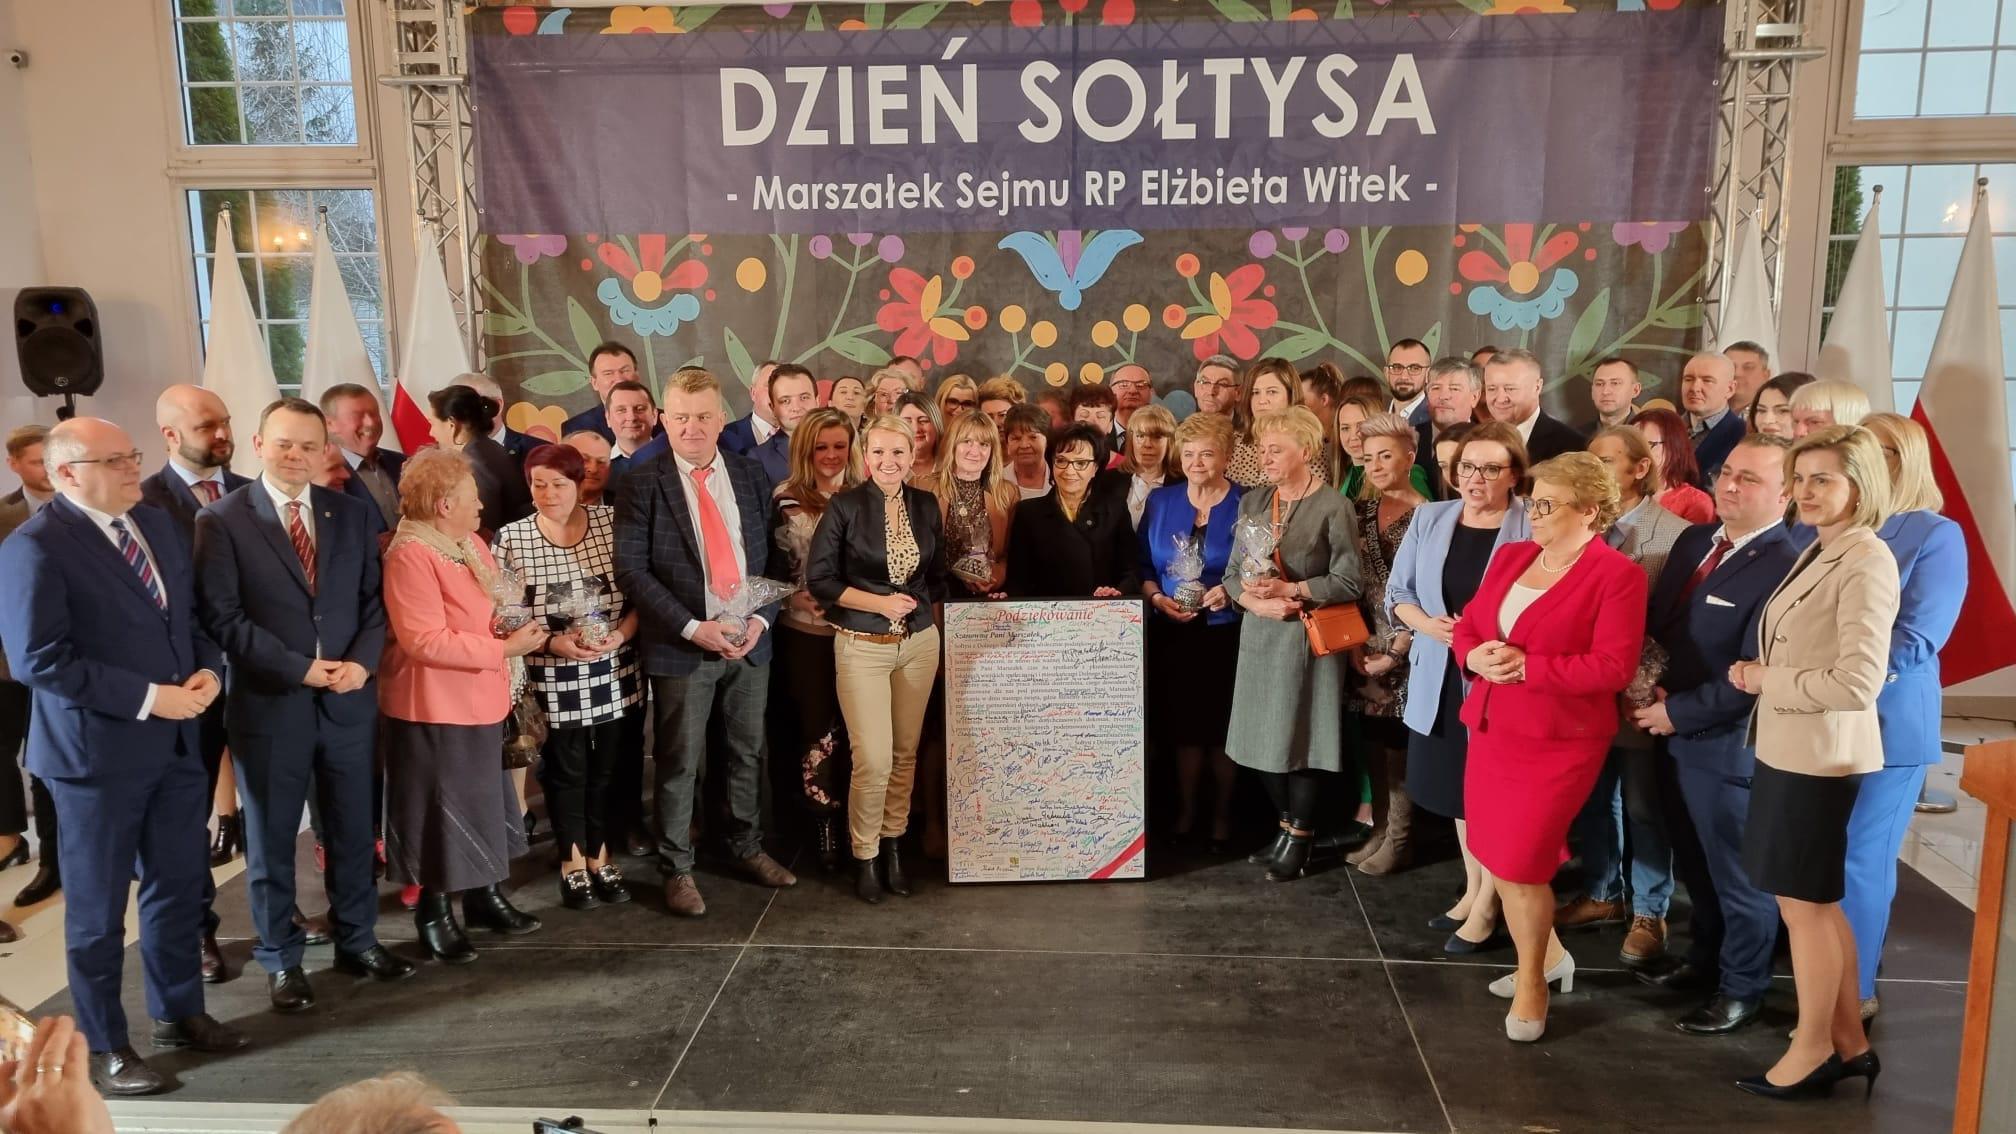 Marszałek Sejmu wzięła udział w obchodach Dnia Sołtysa (FOTO)